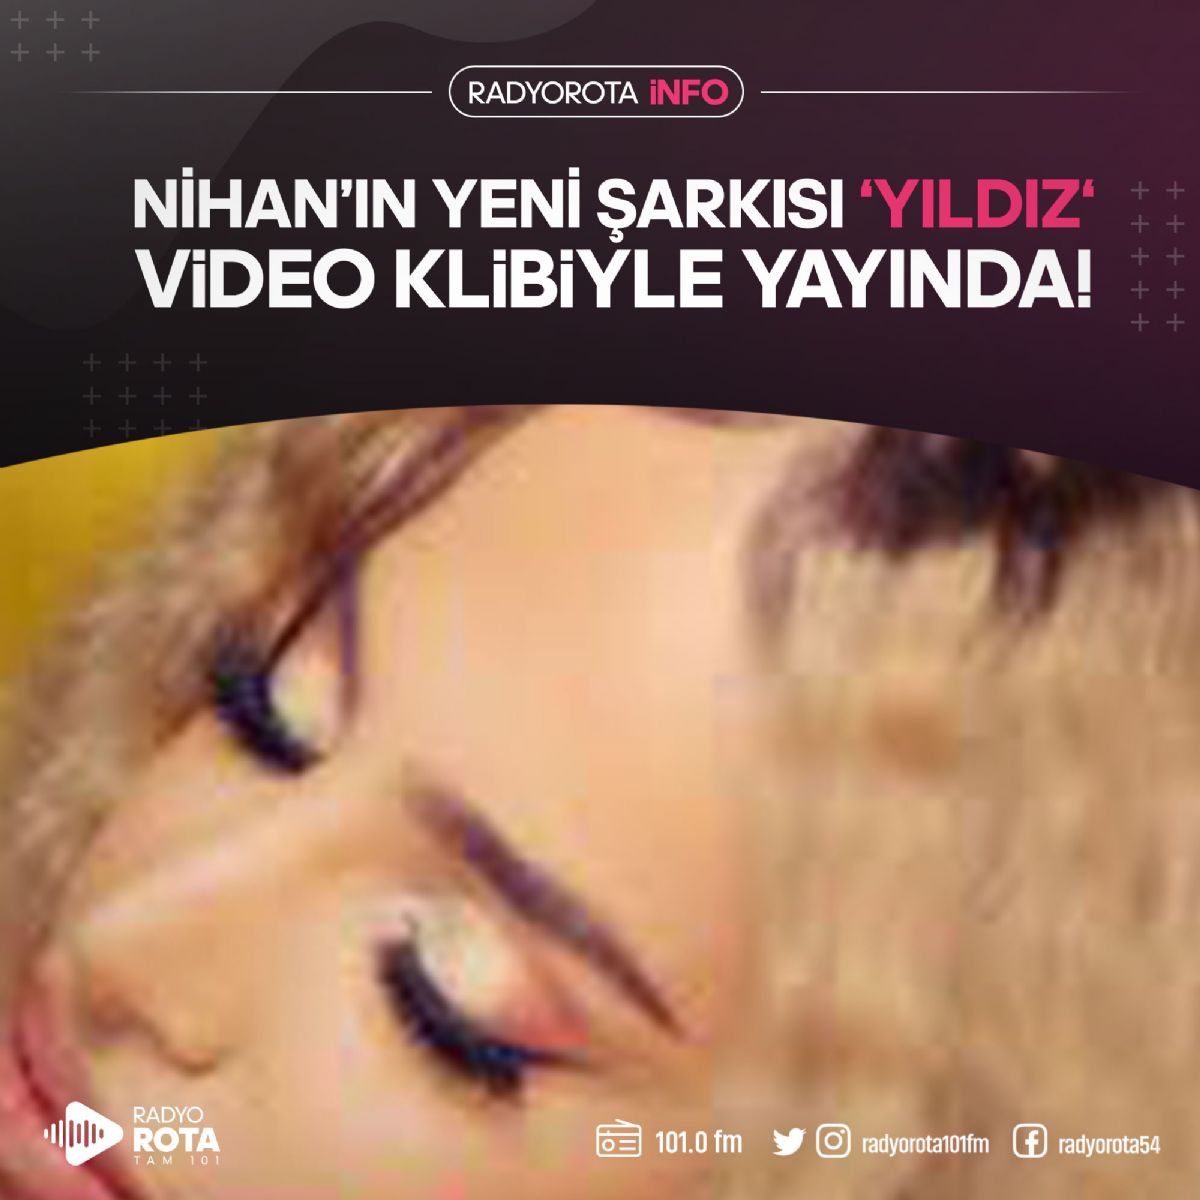 Nihan'ın Yeni Şarkısı 'YILDIZ' Video Klibiyle Yayında!